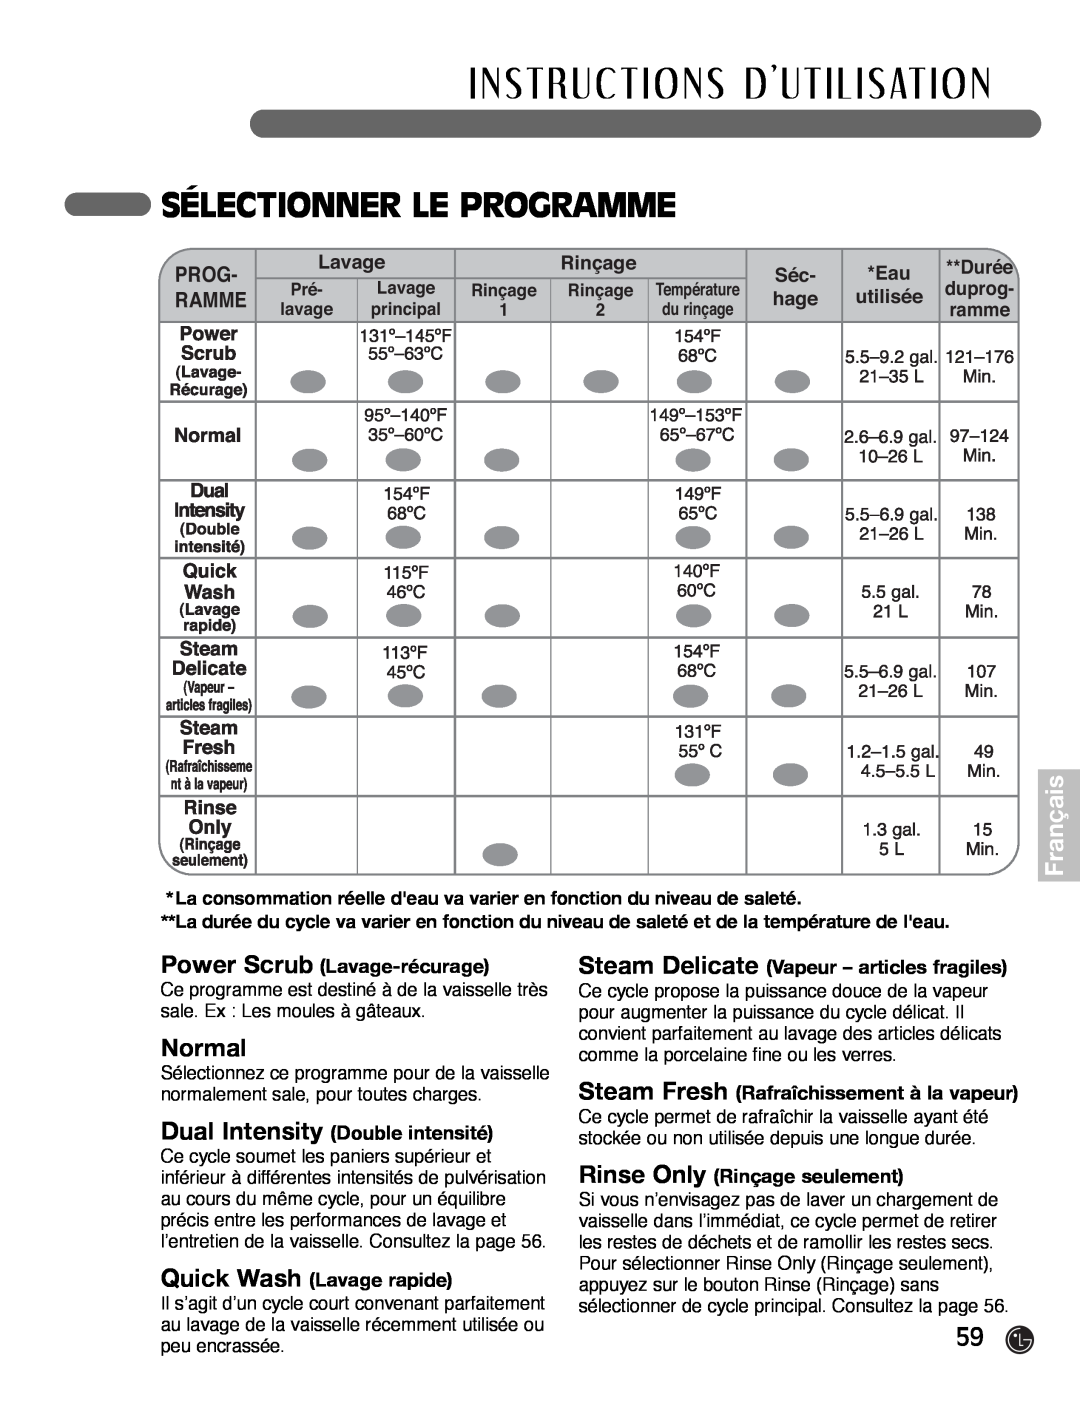 LG Electronics LDF7932ST Sélectionner Le Programme, I N S T Ru C T I O N S D U T I L I S At I O N, Français, Normal, hage 